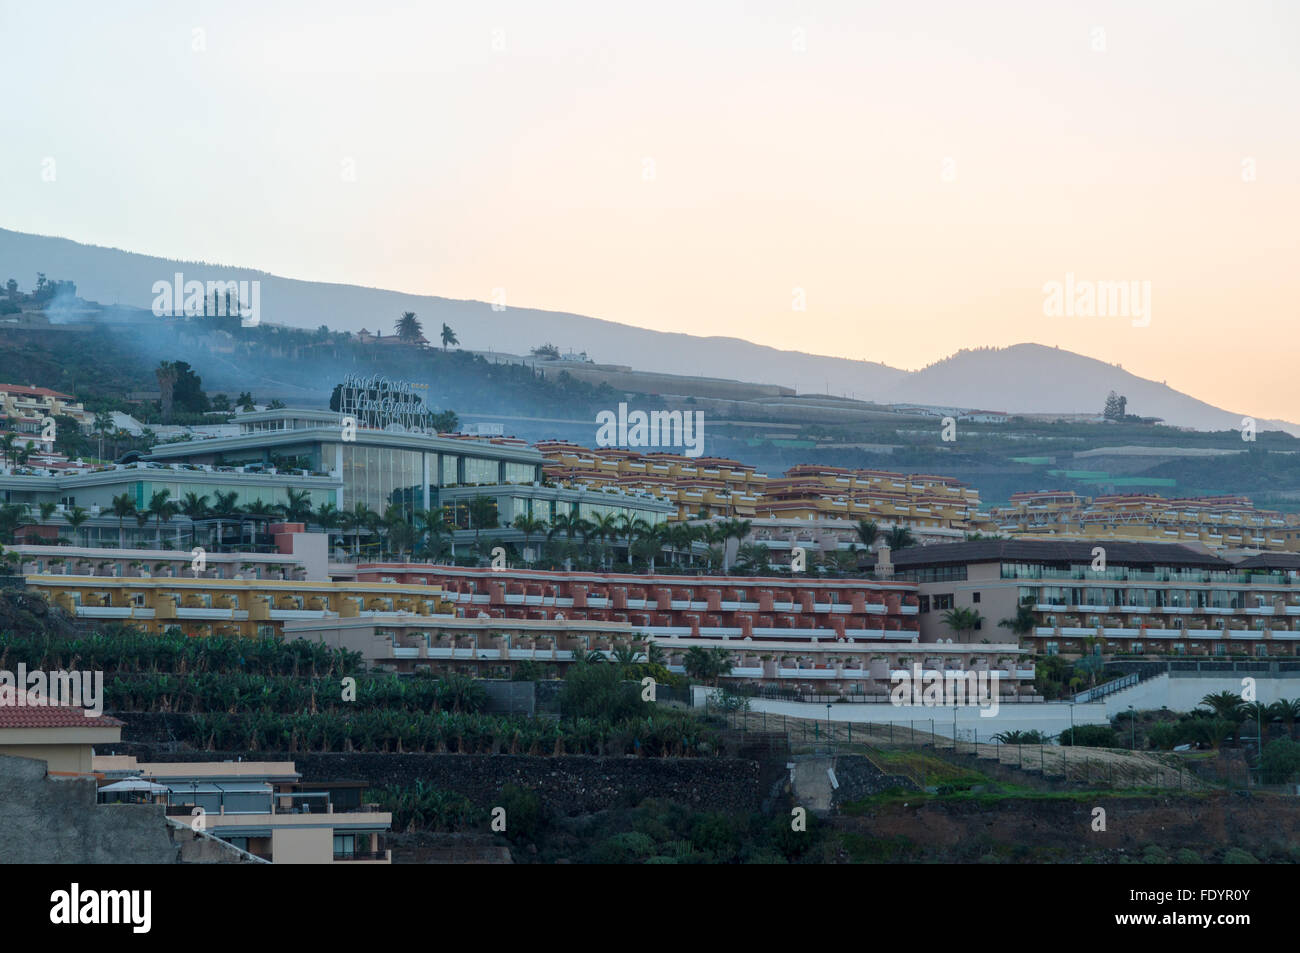 PUERTO SANTIAGO, Spanien - 15. Januar 2015: Resorts am Hang der Stadt Puerto Santiago. Sehen Sie am frühen Morgen Sonnenaufgang zu warten. Stockfoto